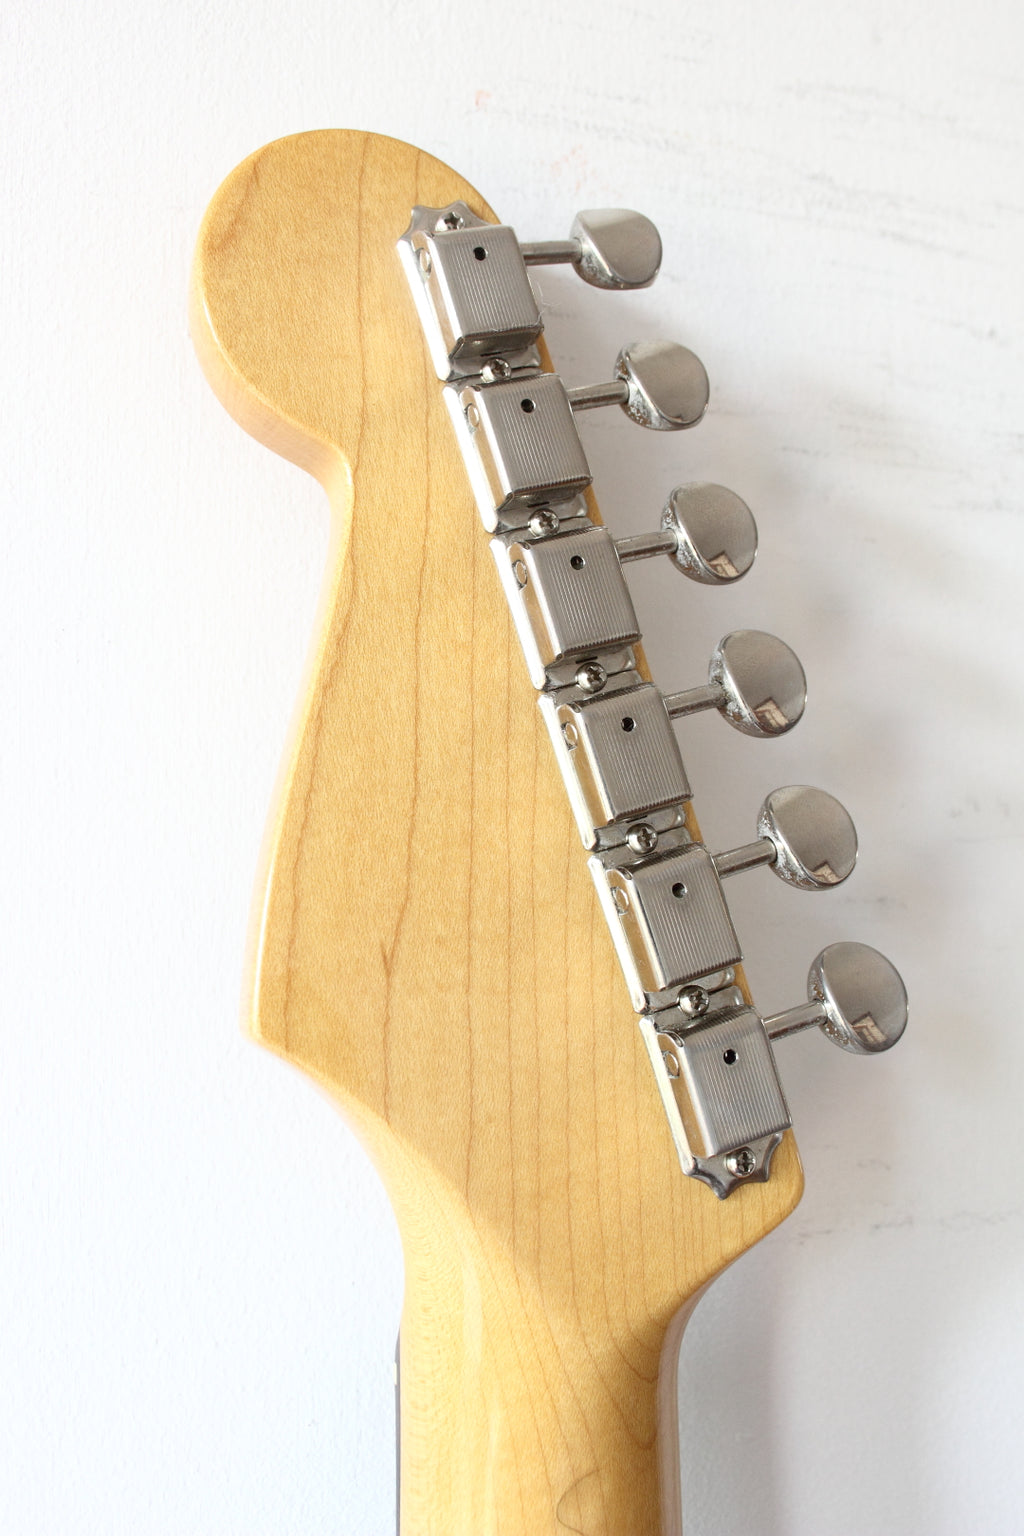 Fender Japan '62 Reissue Stratocaster Shell Pink ST62 2013